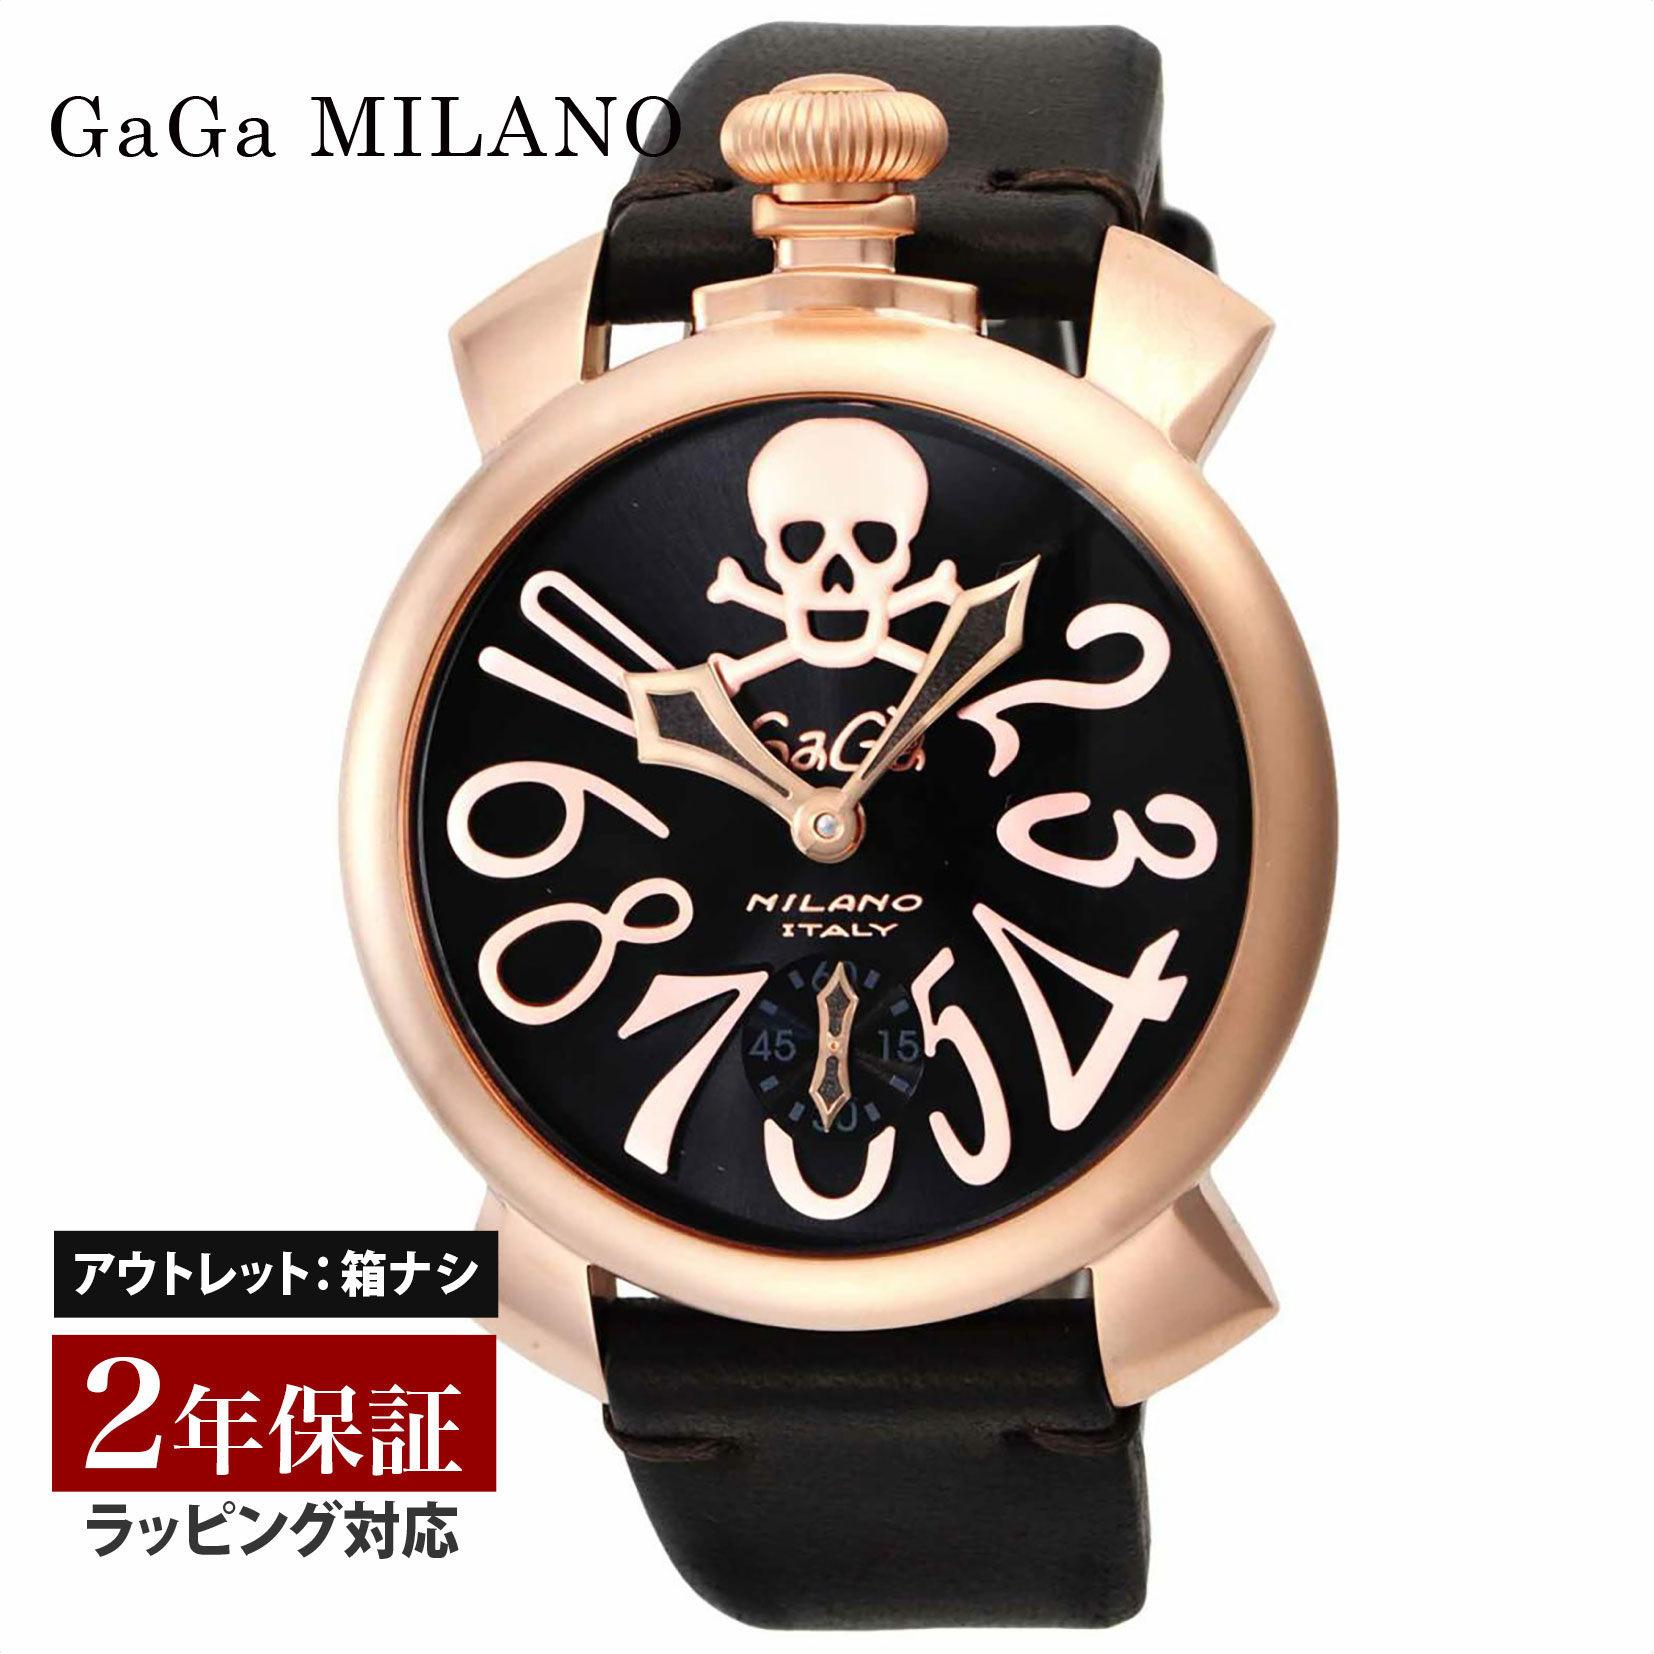 【クリアランスSALE】 GaGaMILAN ガガミラノ MANUALE 48MM メンズ スイス製 ガガ ミラノ 手巻き ブラック 5011ART01S-BRW 腕時計 高級腕時計 ブランド 